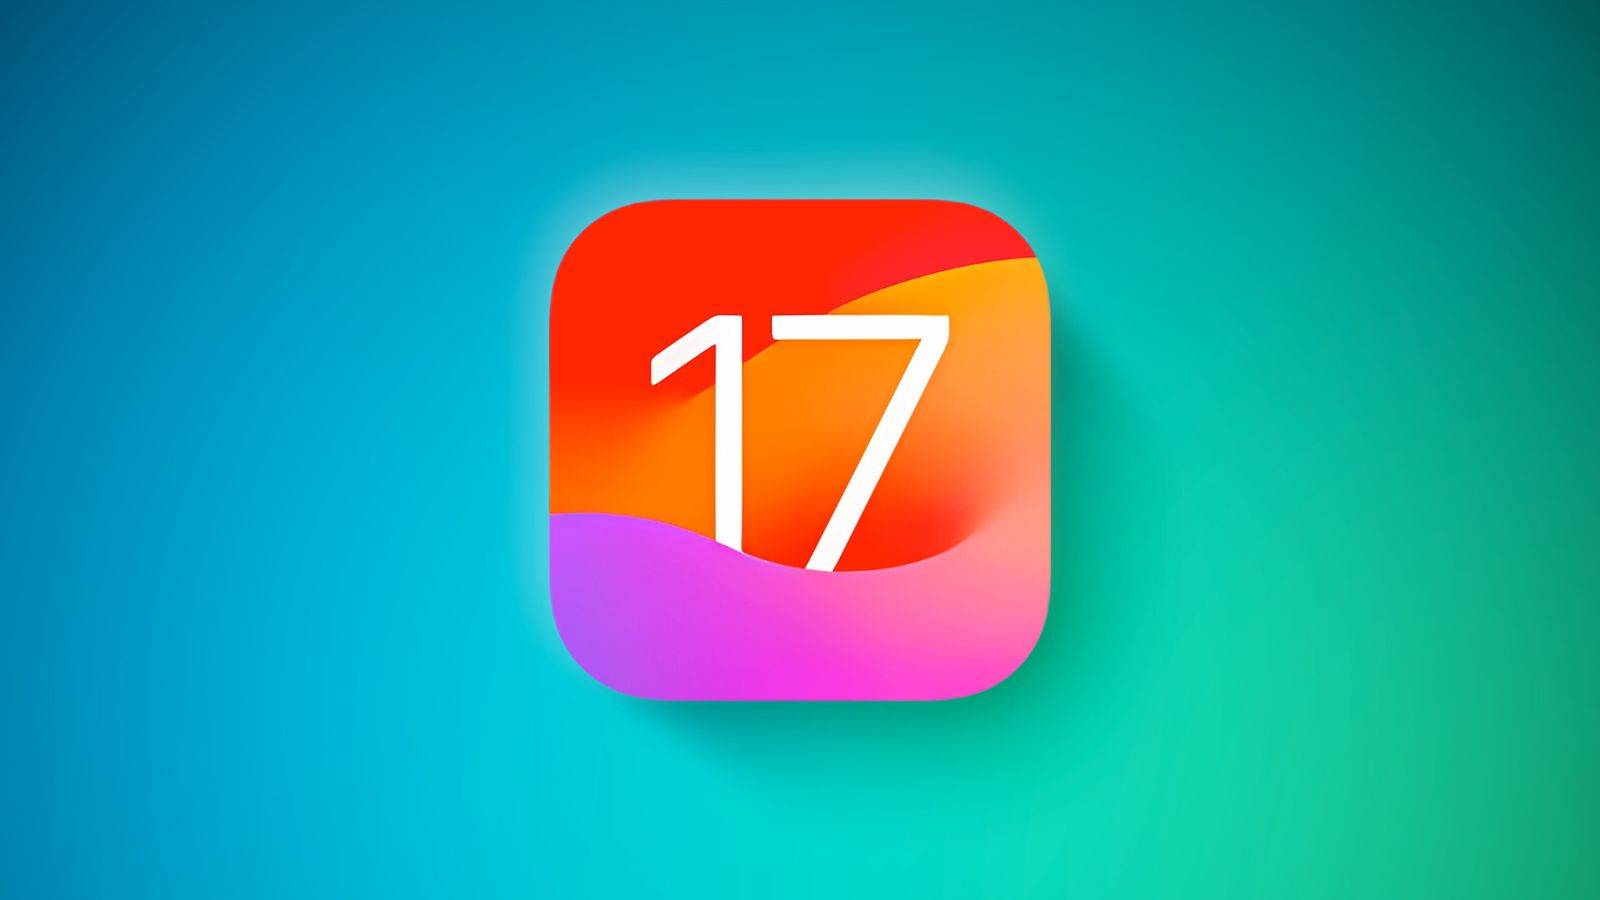 iOS 17.4 Pantalla Información detallada Baterías de iPhone